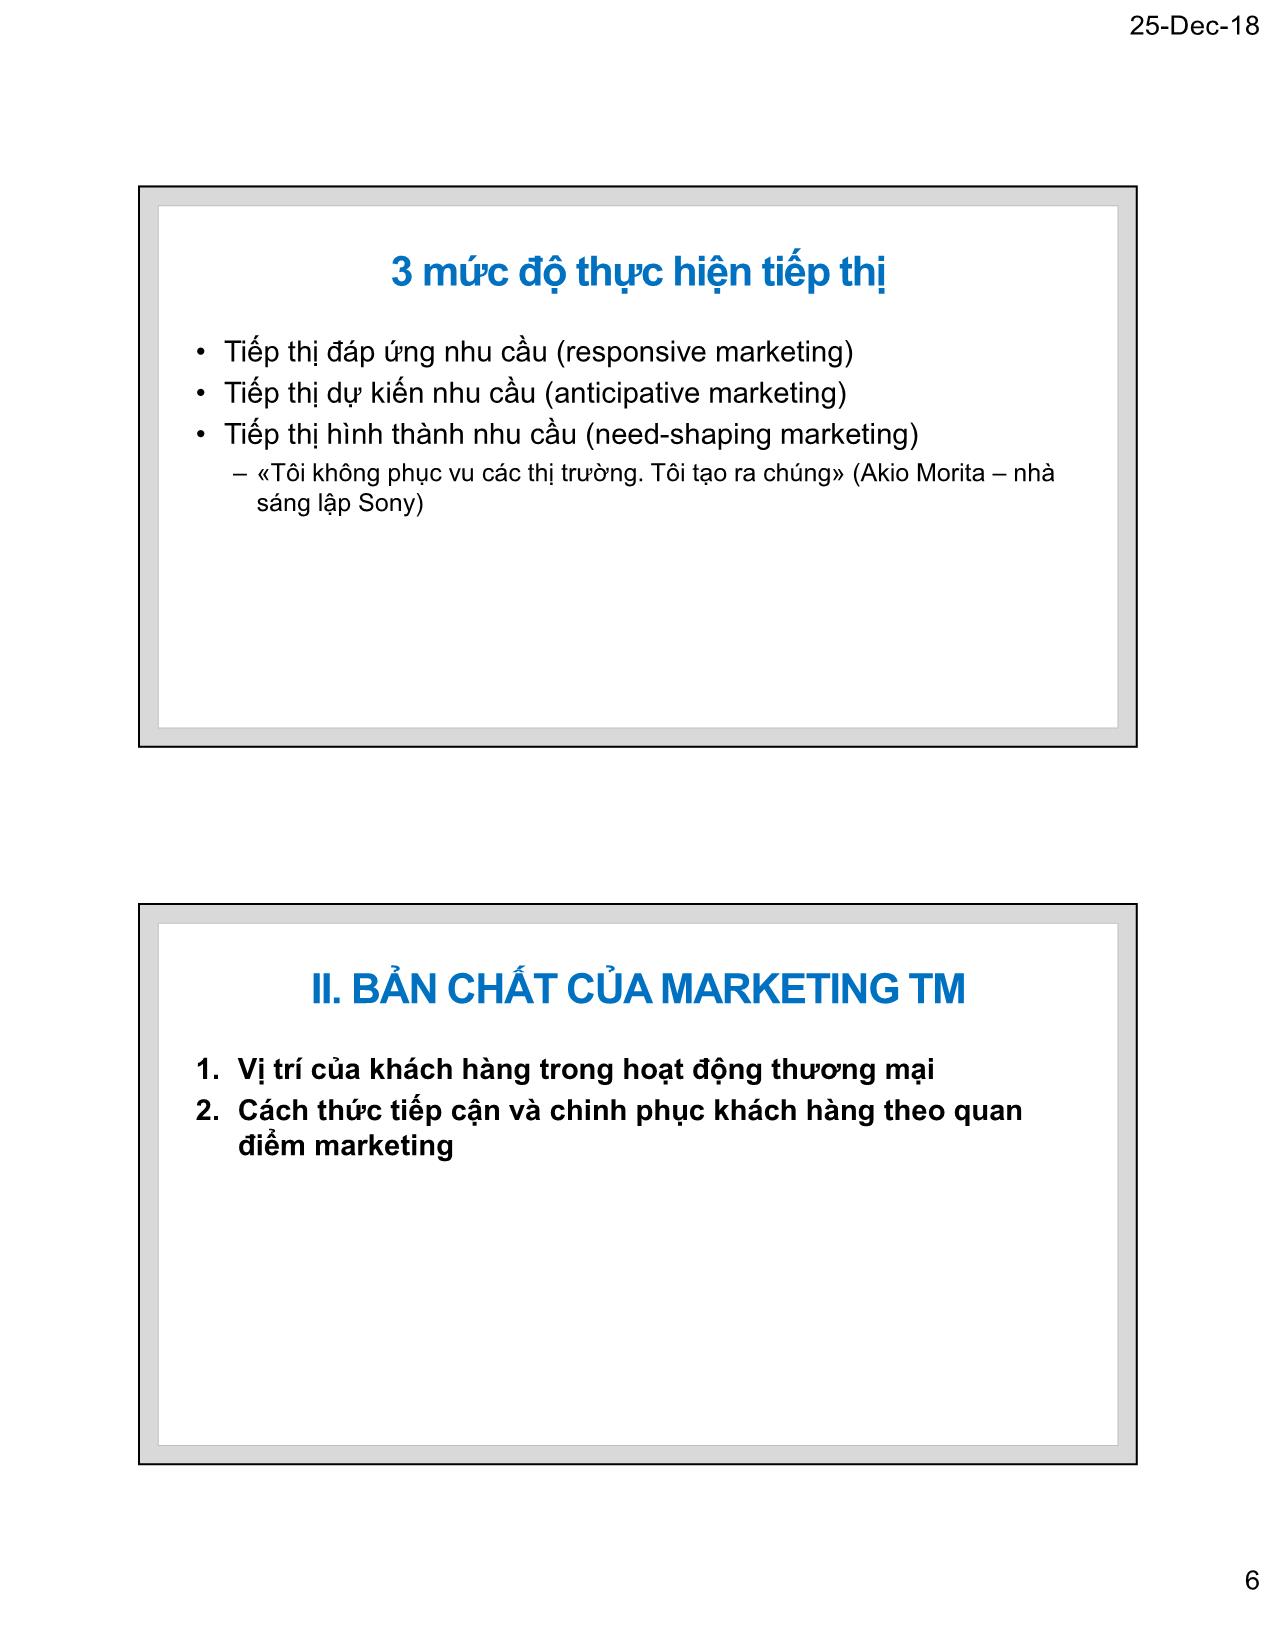 Bài giảng Marketing thương mại - Chương 1: Tư tưởng cơ bản của Marketing thương mại - Nguyễn Tường Huy trang 6